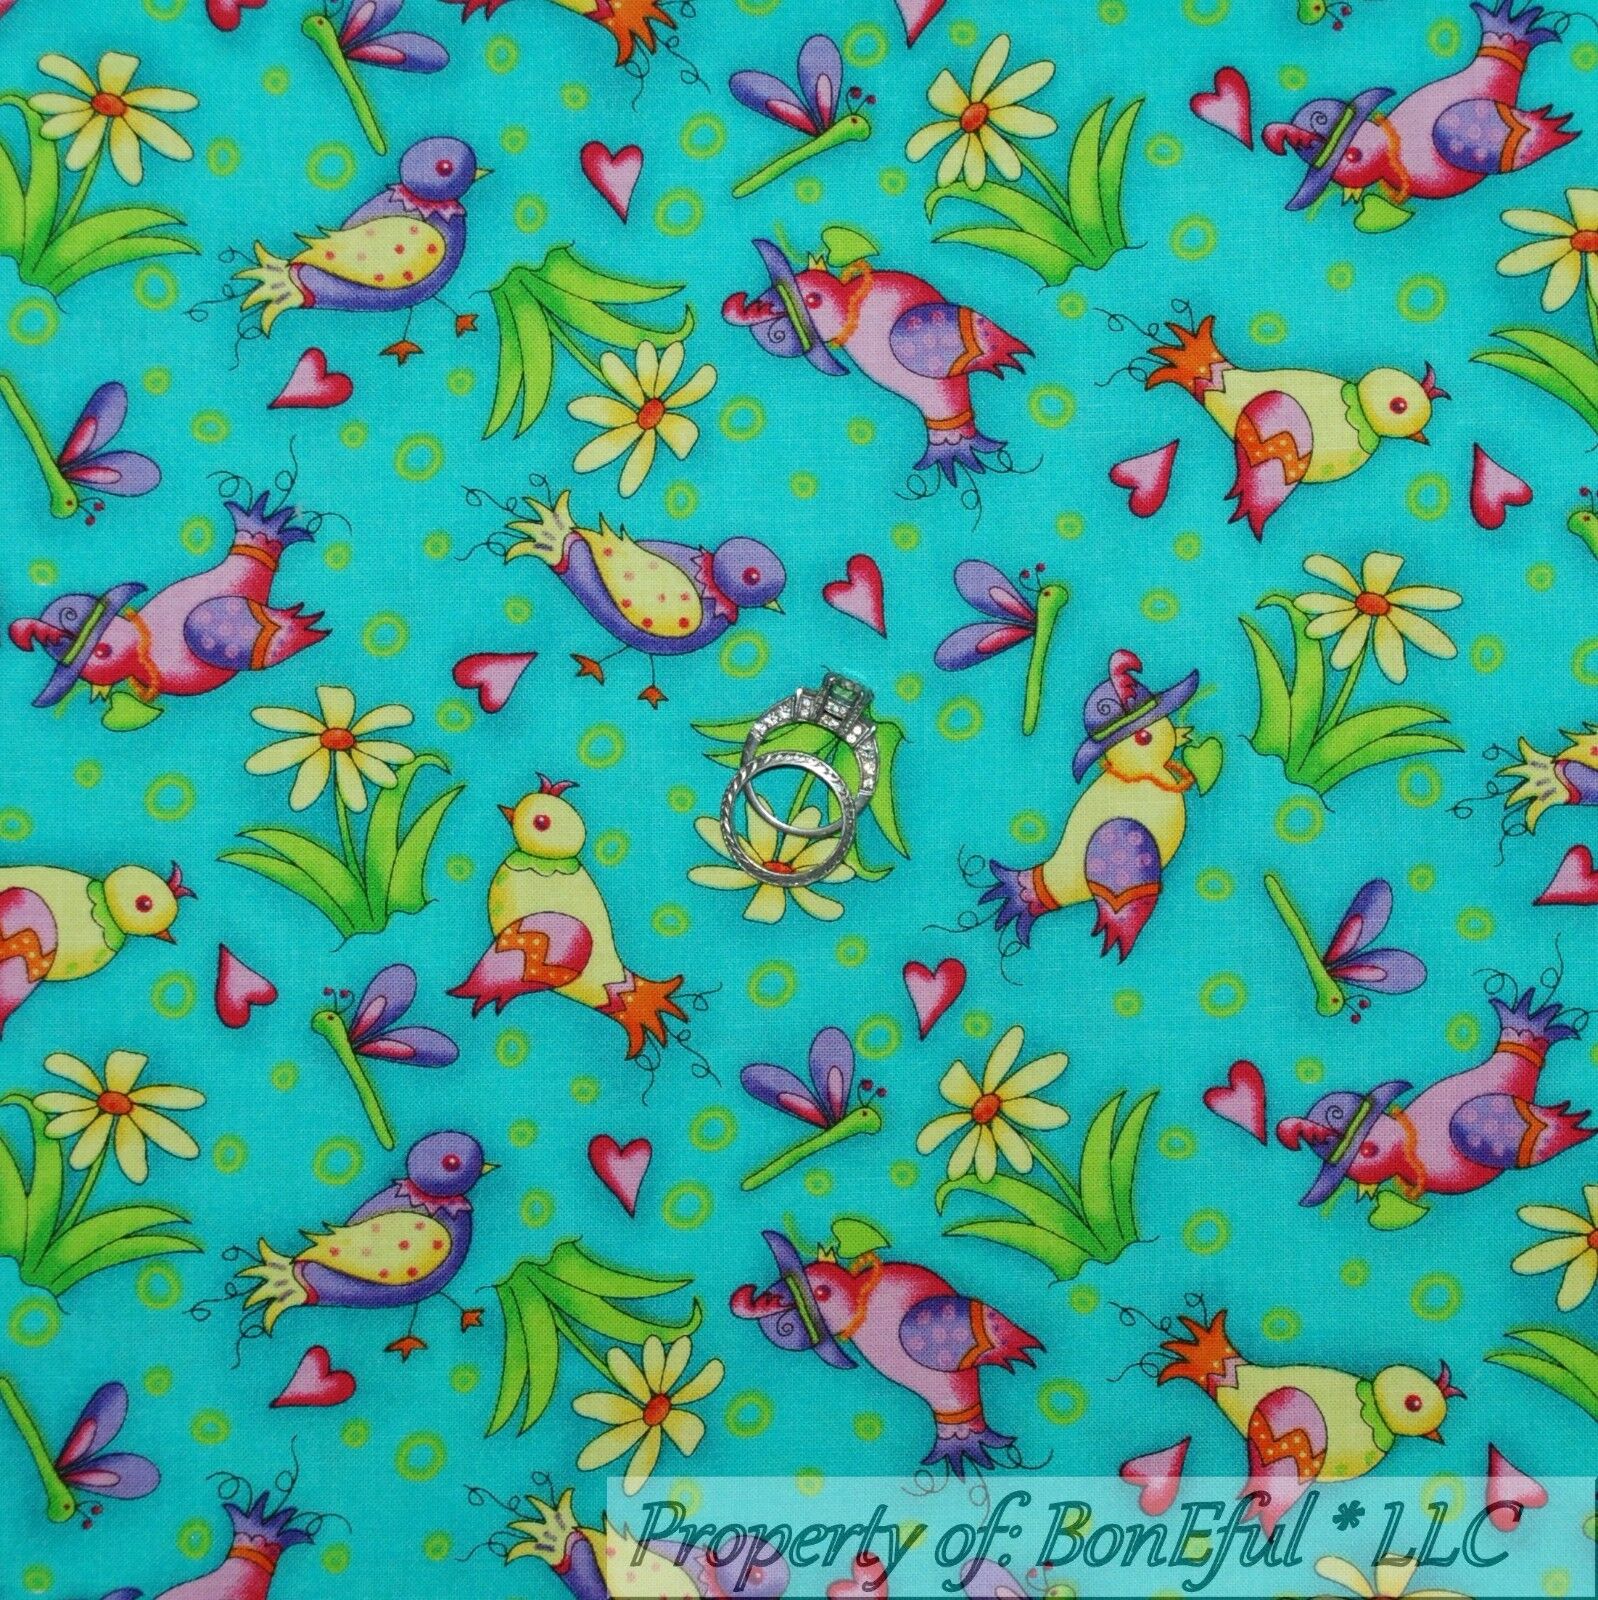 BonEful Fabric FQ Cotton Quilt Aqua Blue Pink Love Bird Heart Flower Dragonfly S